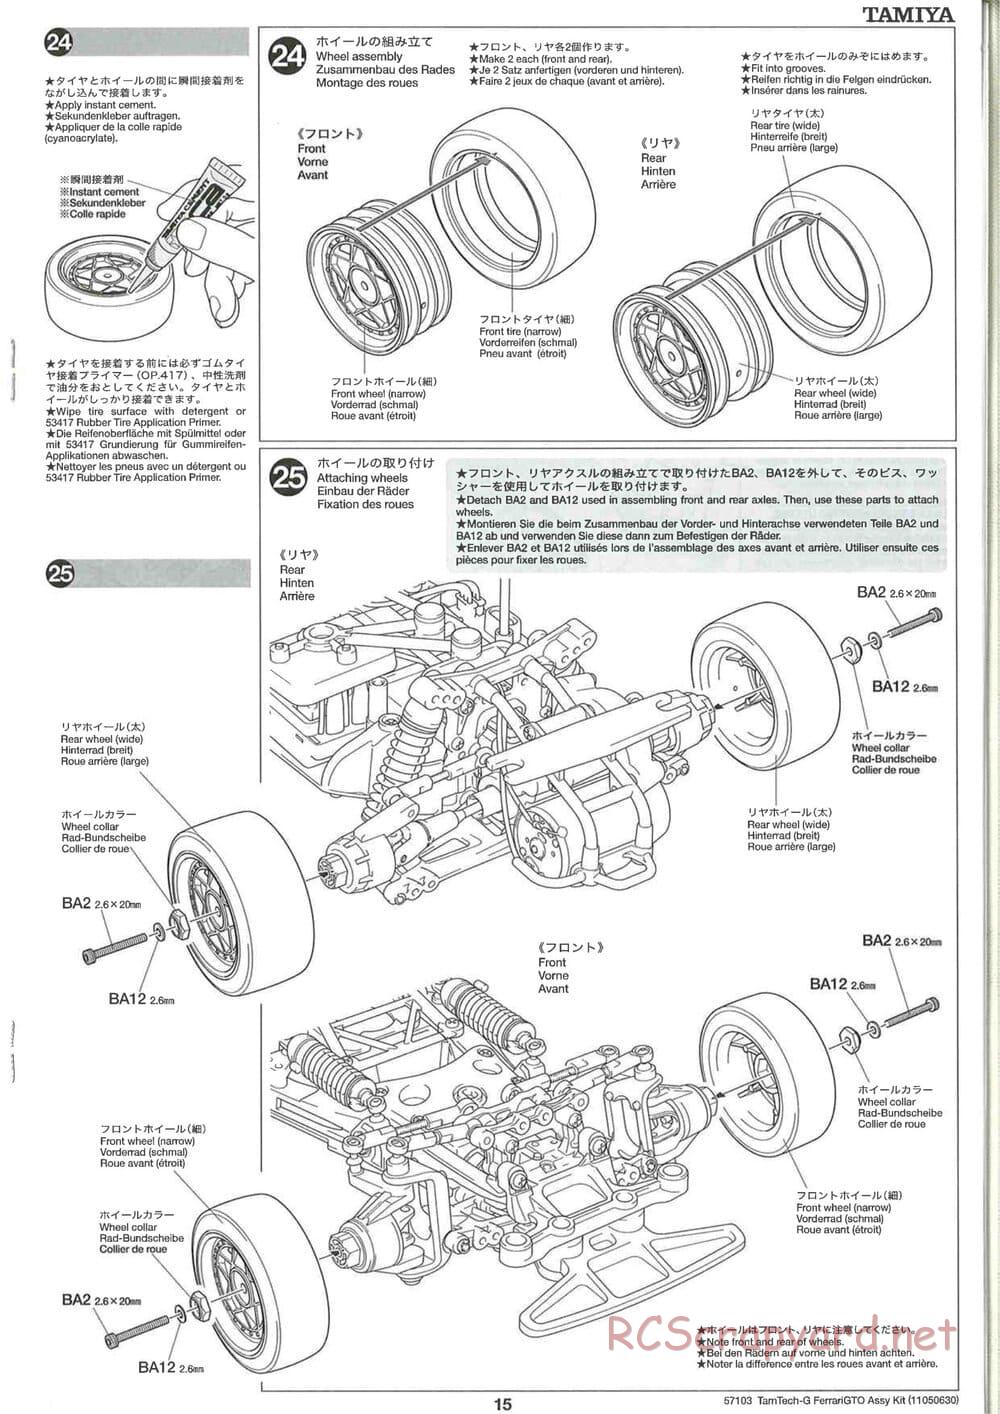 Tamiya - Ferrari 288 GTO - GT-01 Chassis - Manual - Page 15